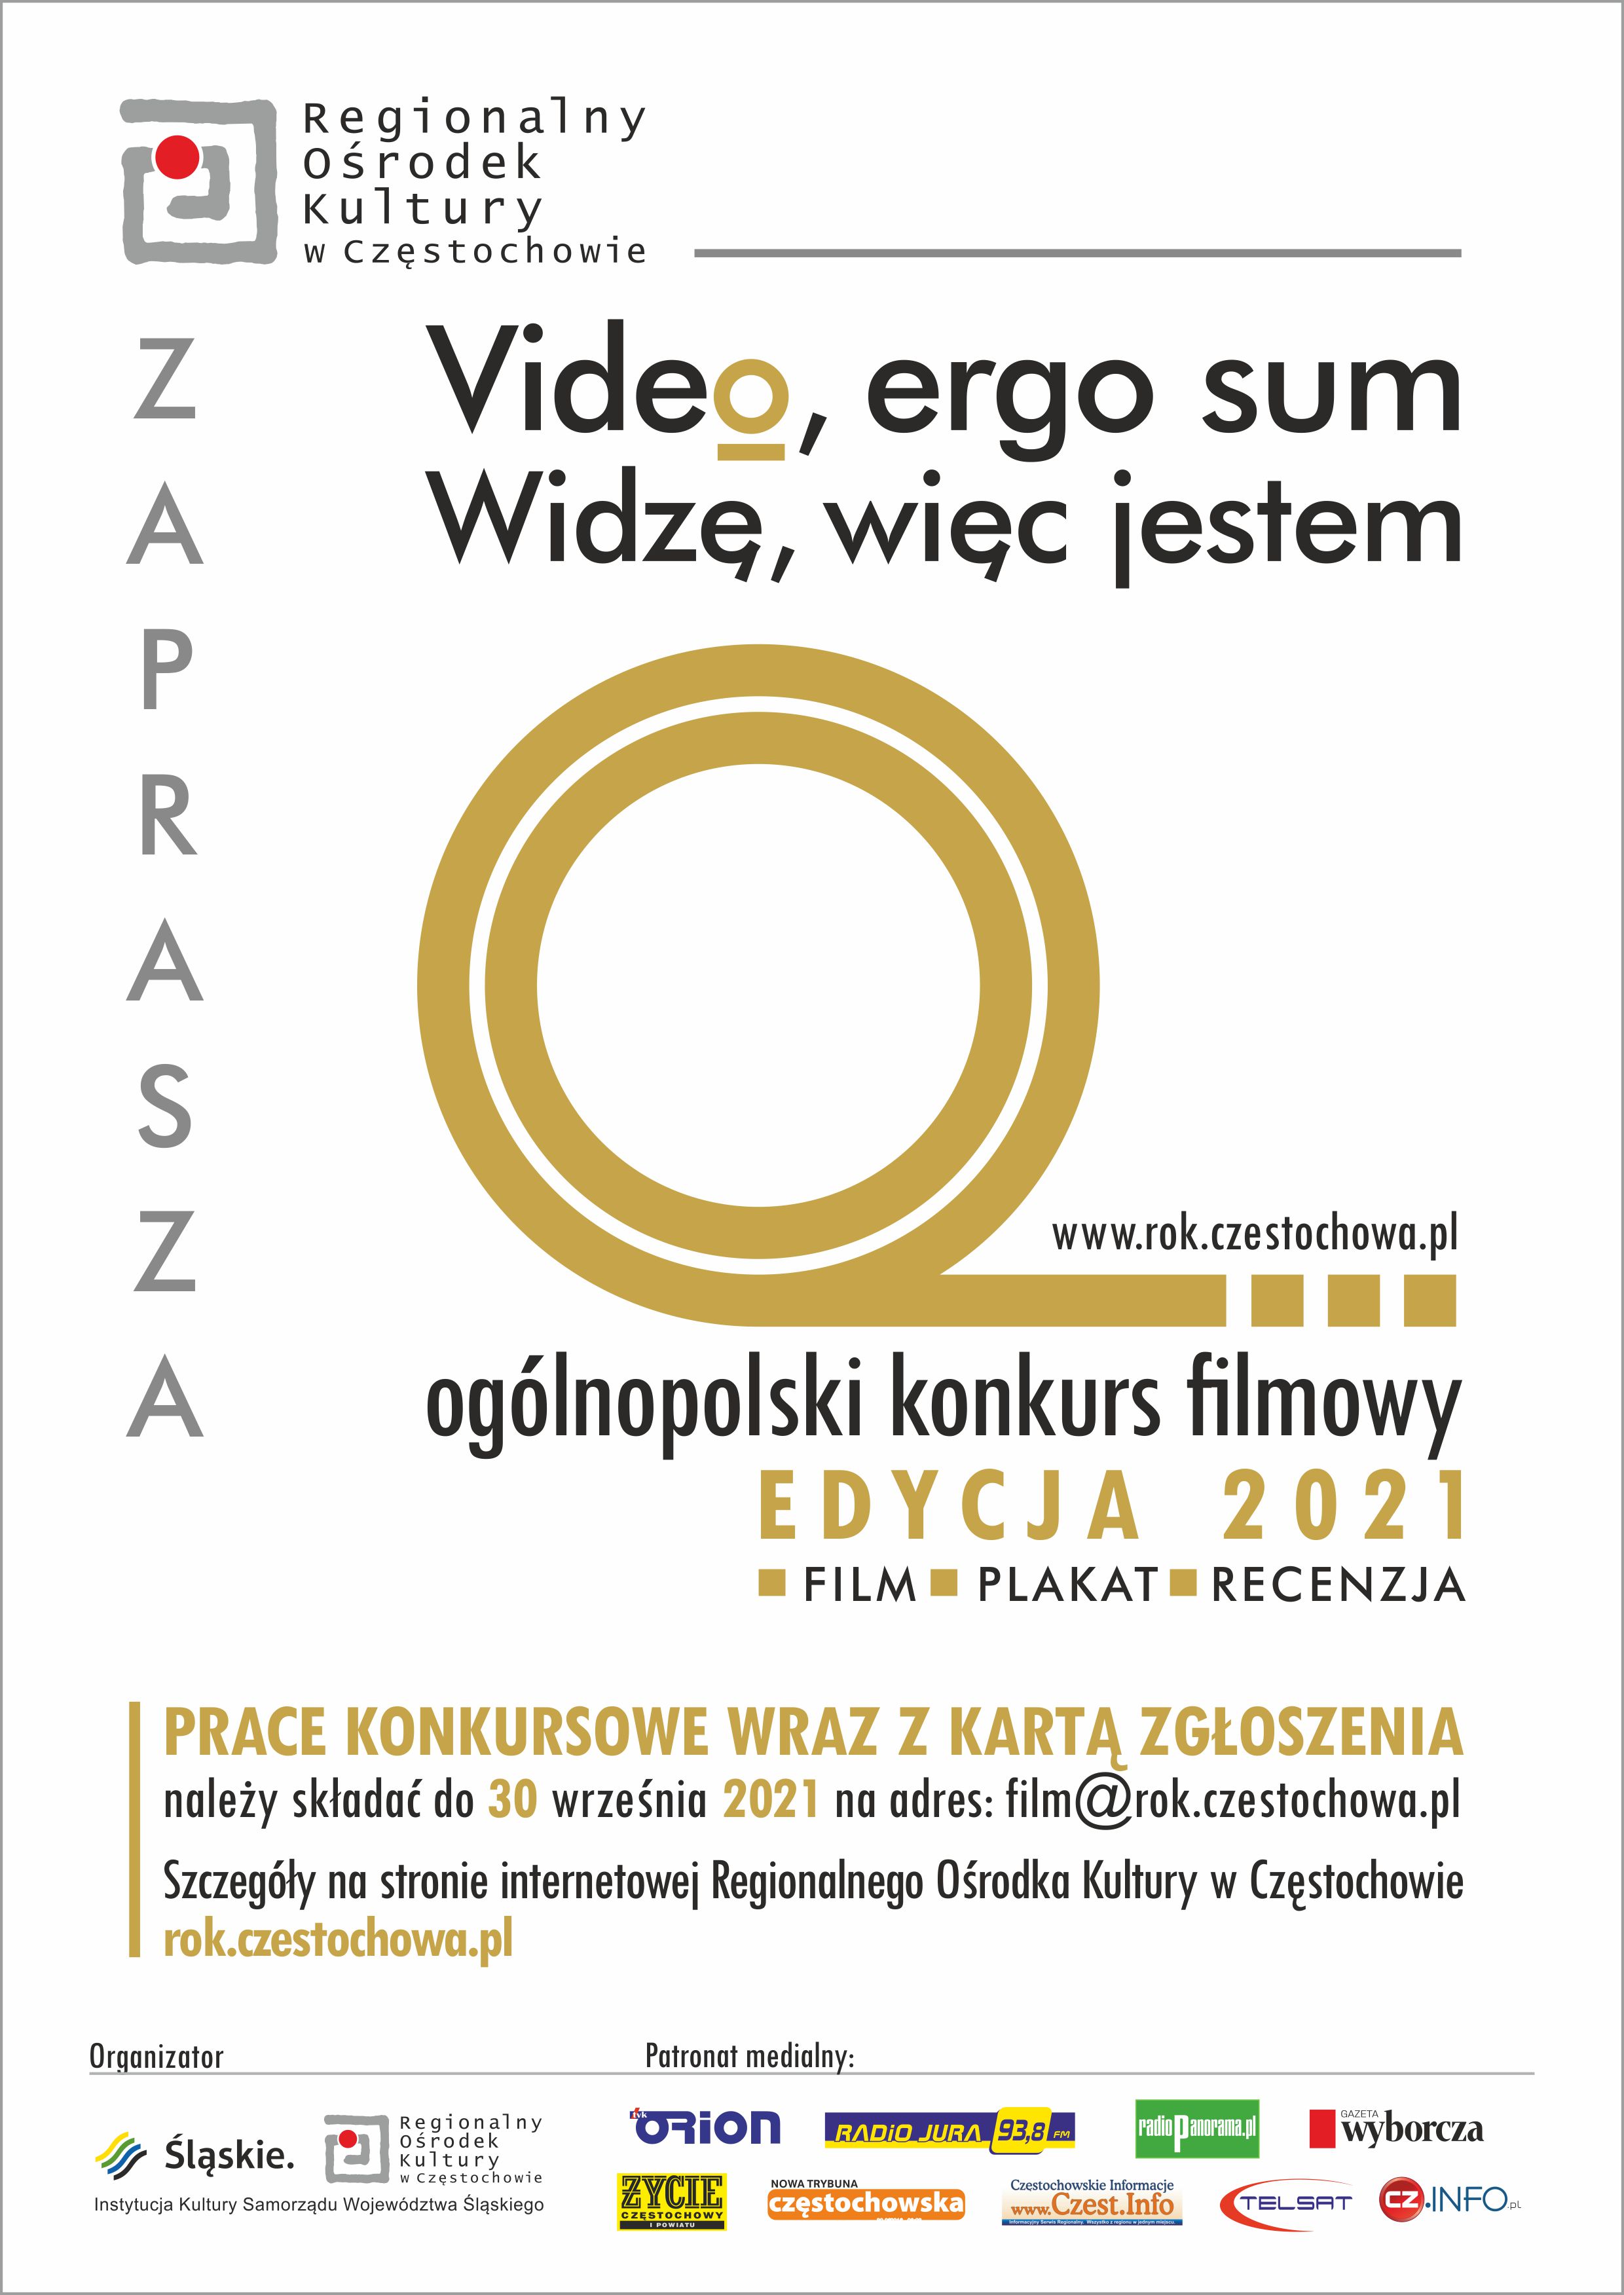 Plakat "Ogólnopolski konkurs filmowy" - opis alternatywny poniżej.